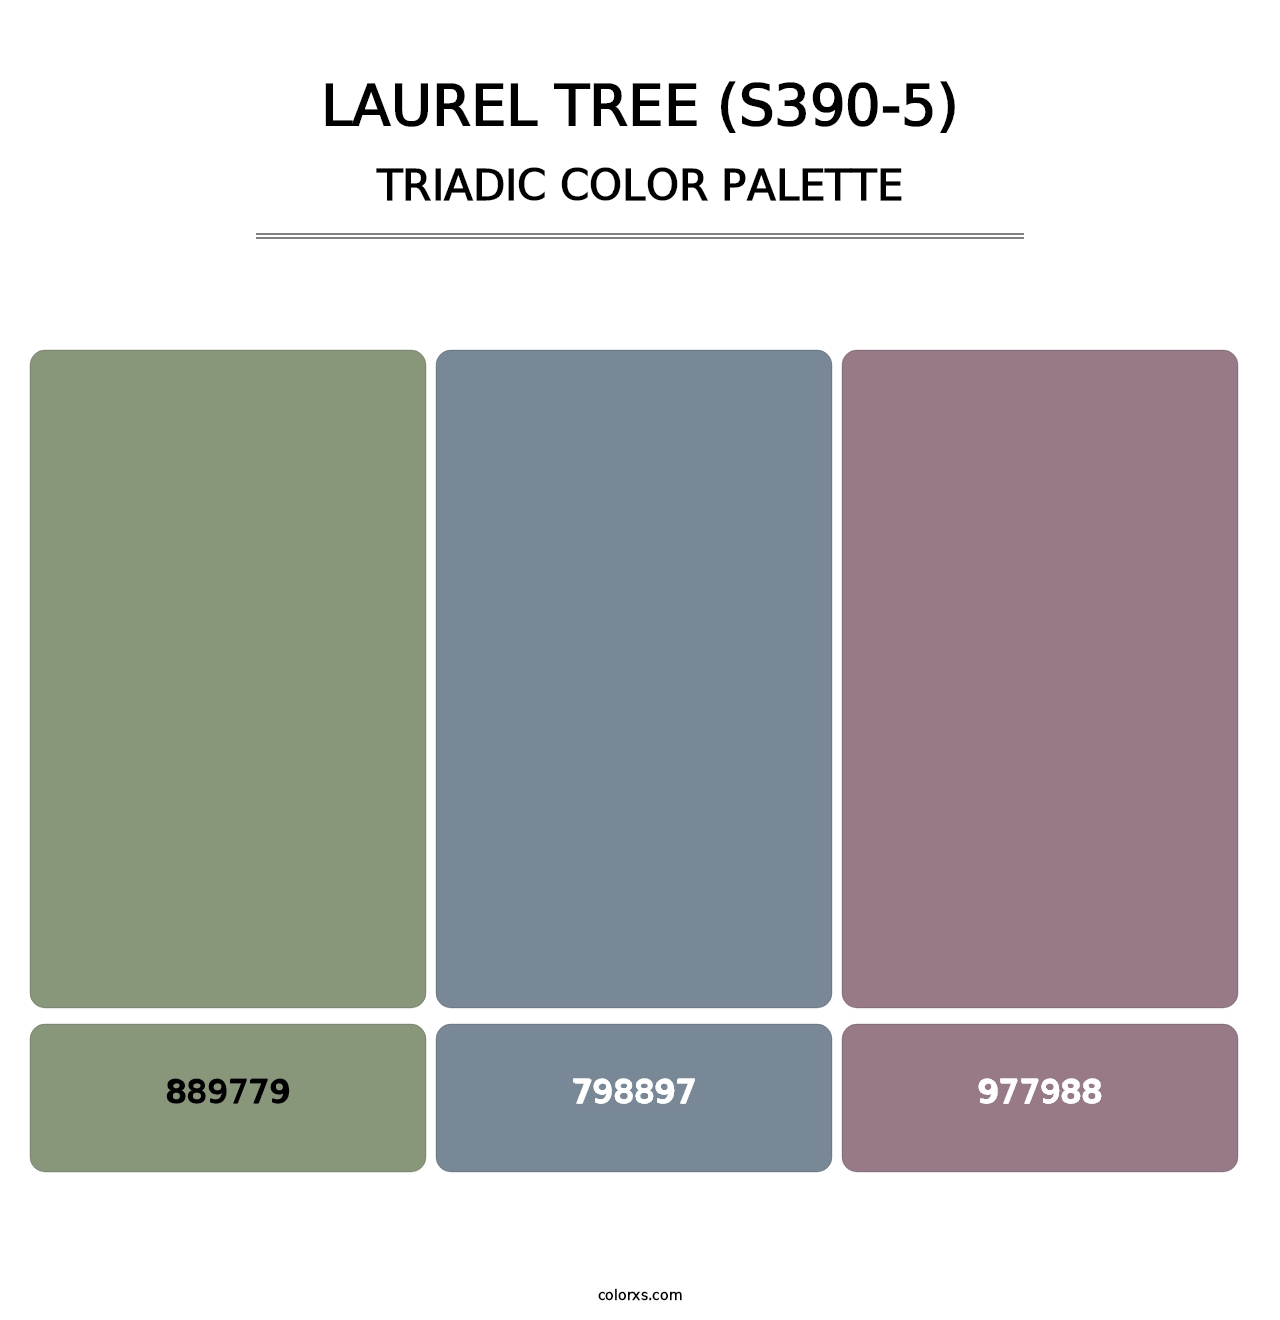 Laurel Tree (S390-5) - Triadic Color Palette